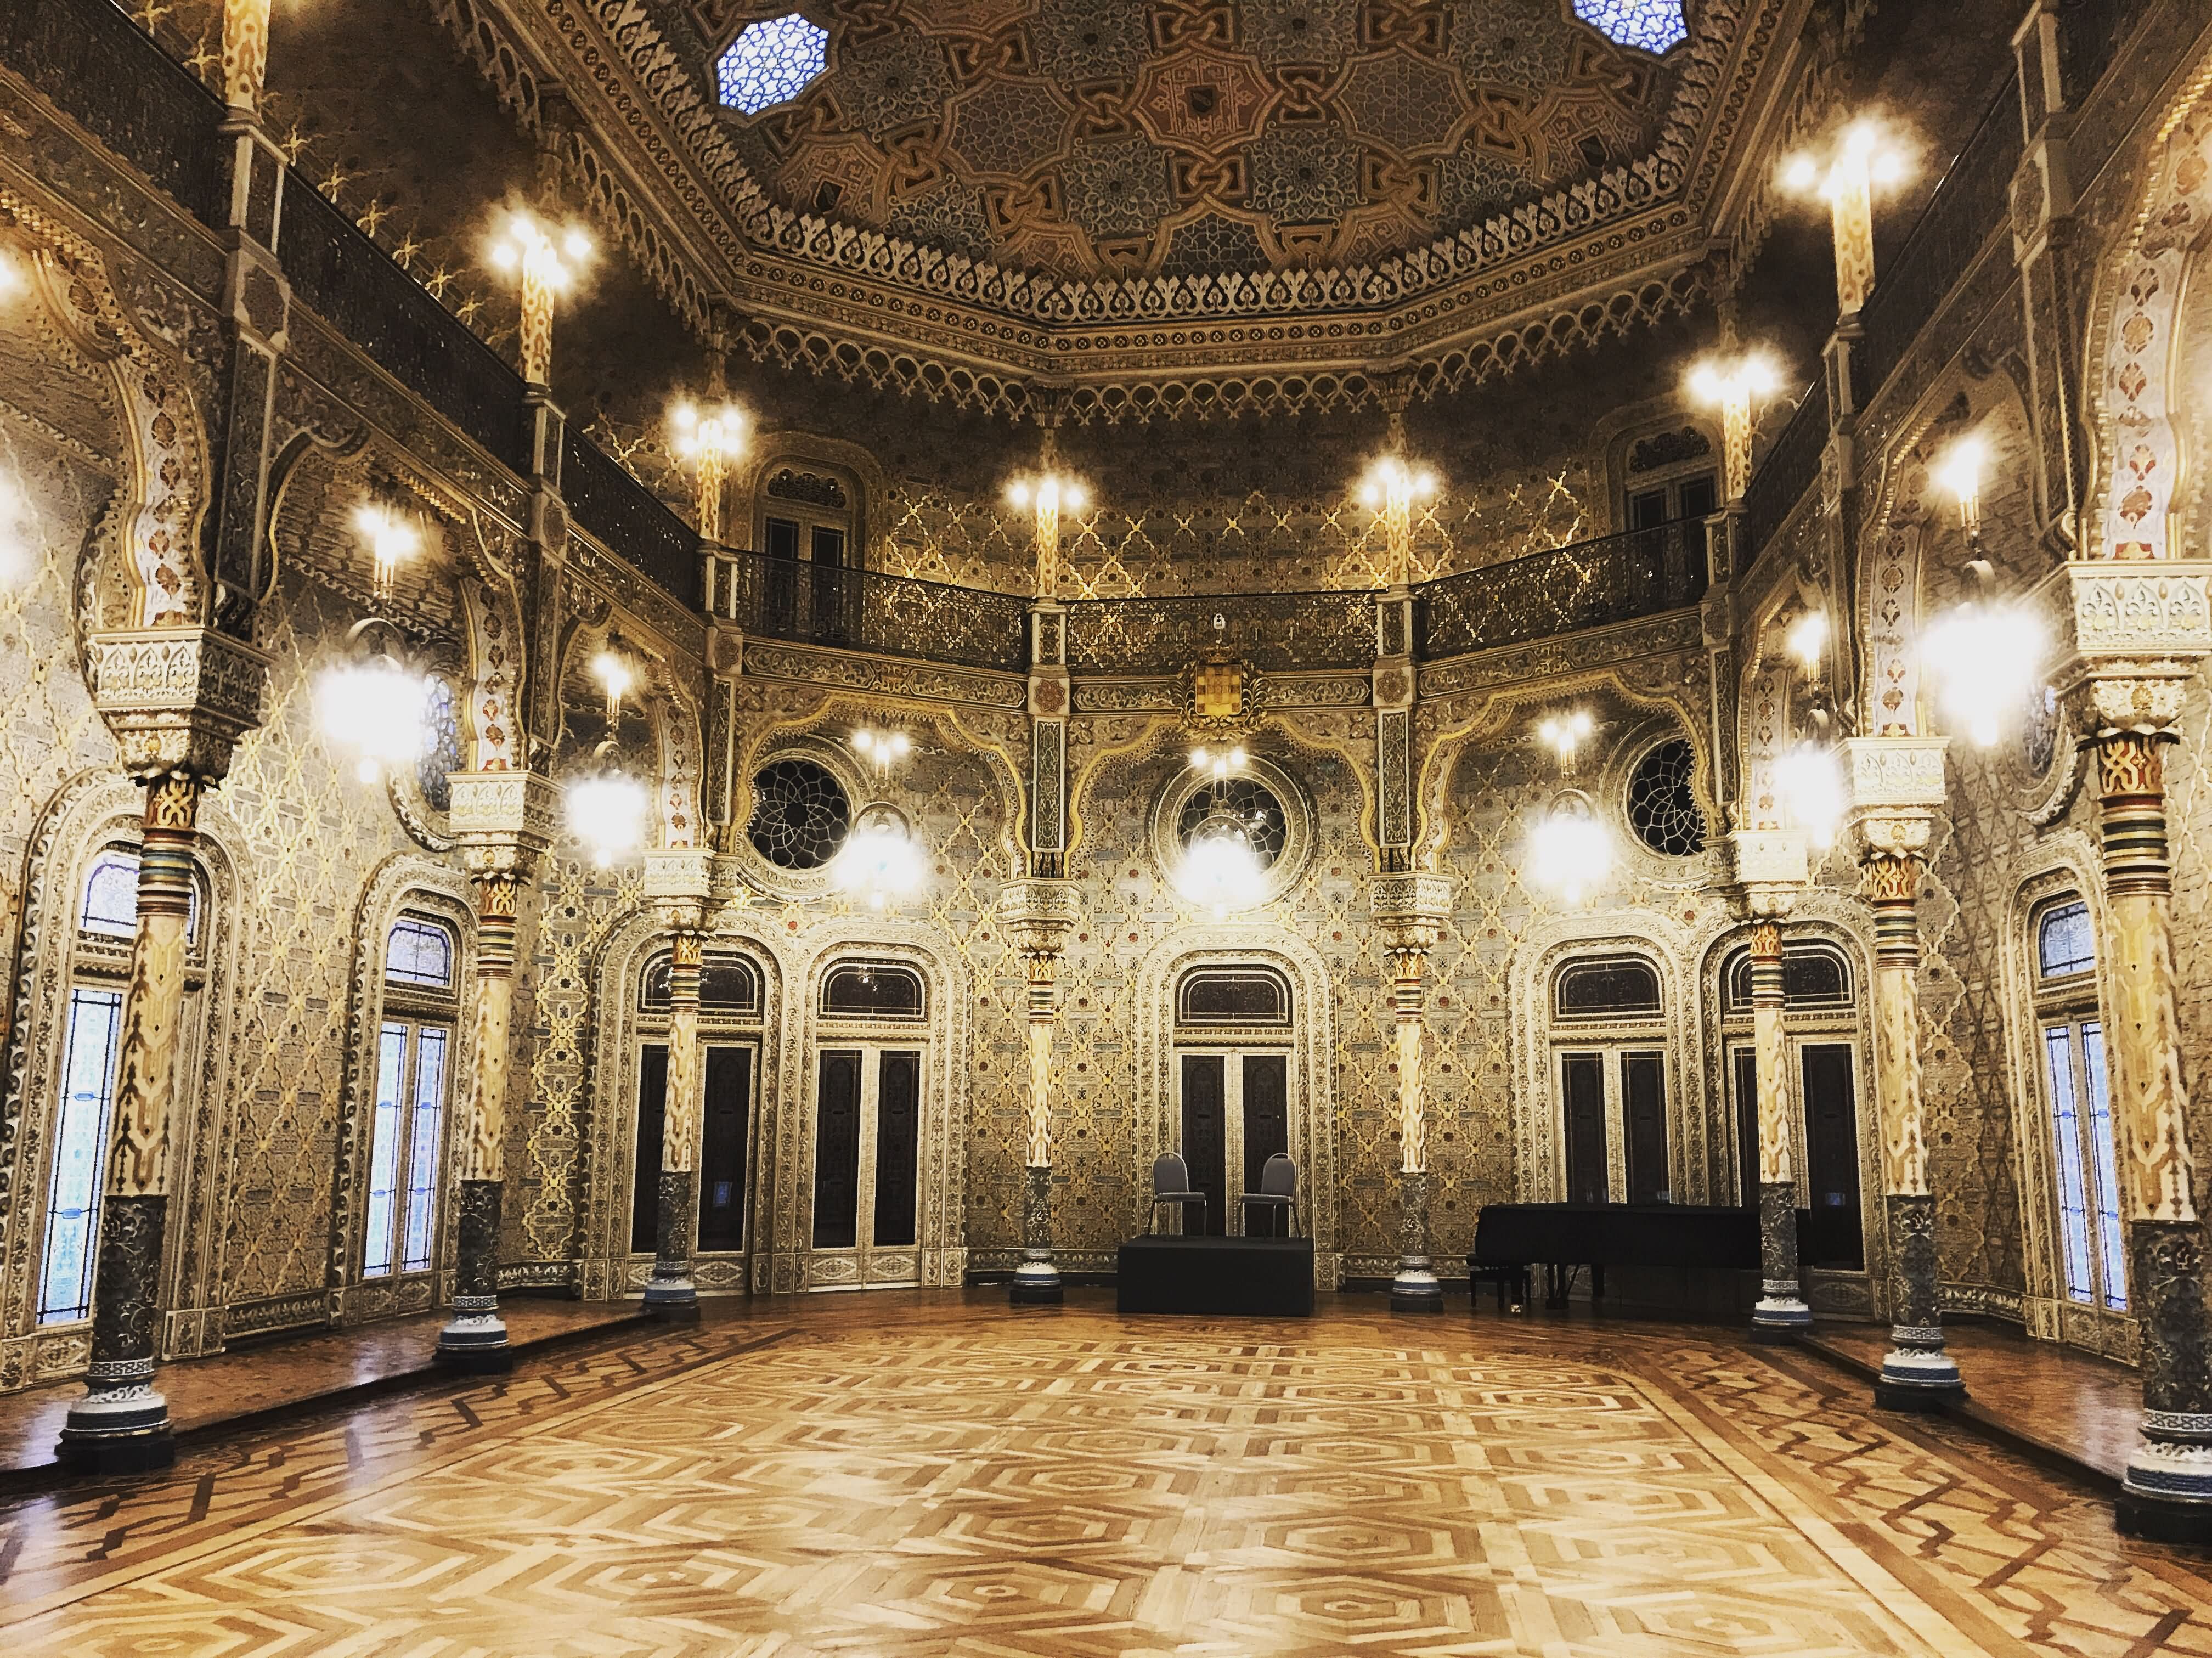 Inside Room Of The Palacio da Bolsa